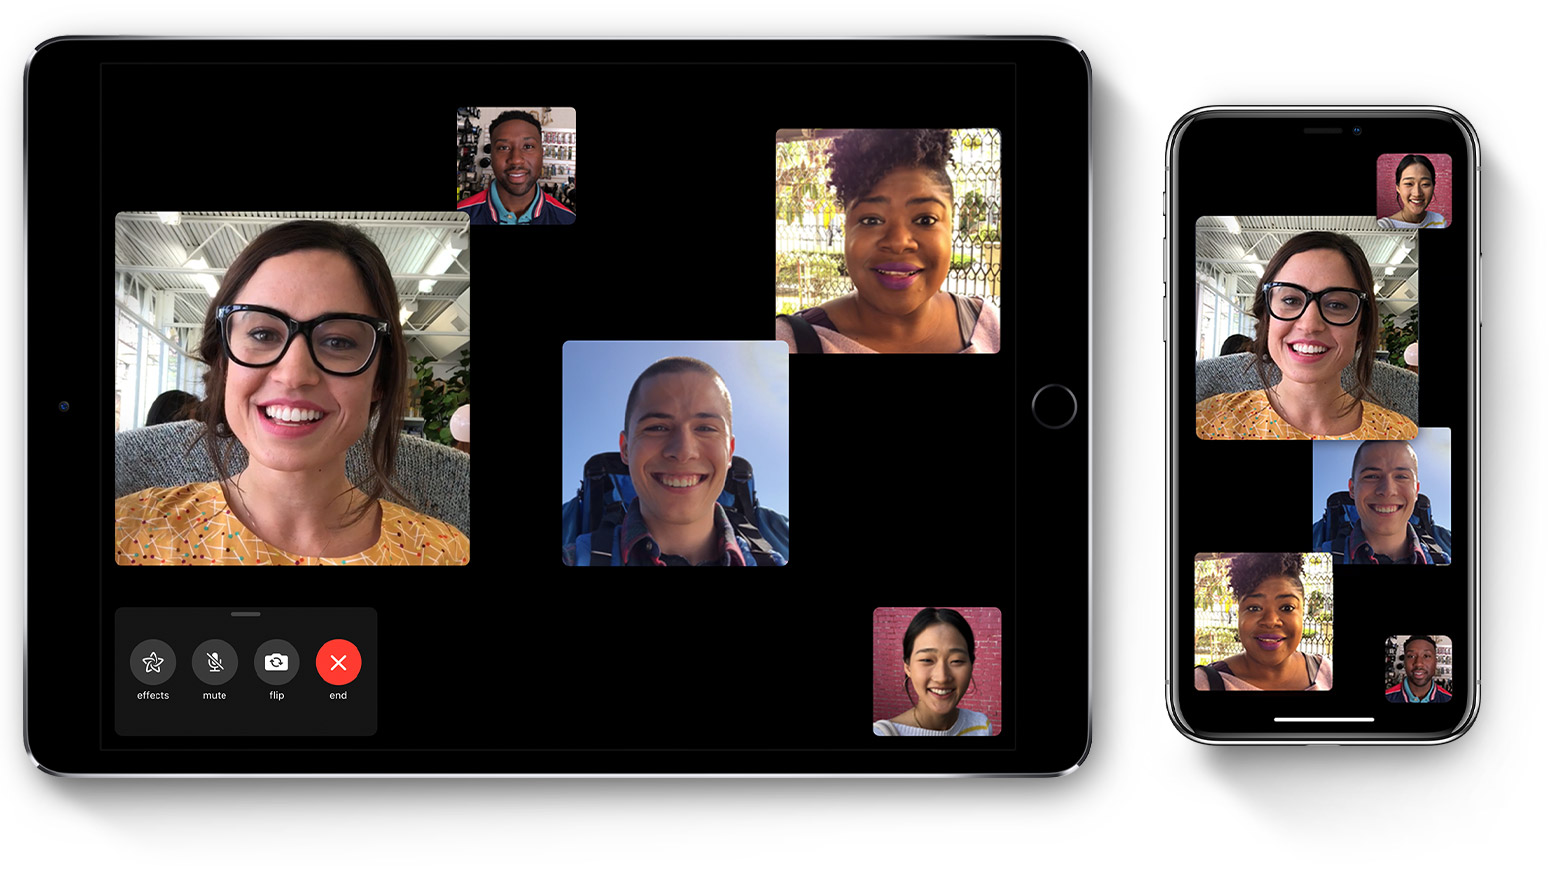 Appleの｢FaceTime｣に応答前に声が聞こえてしまう重大なバグ － 今週後半に修正へ